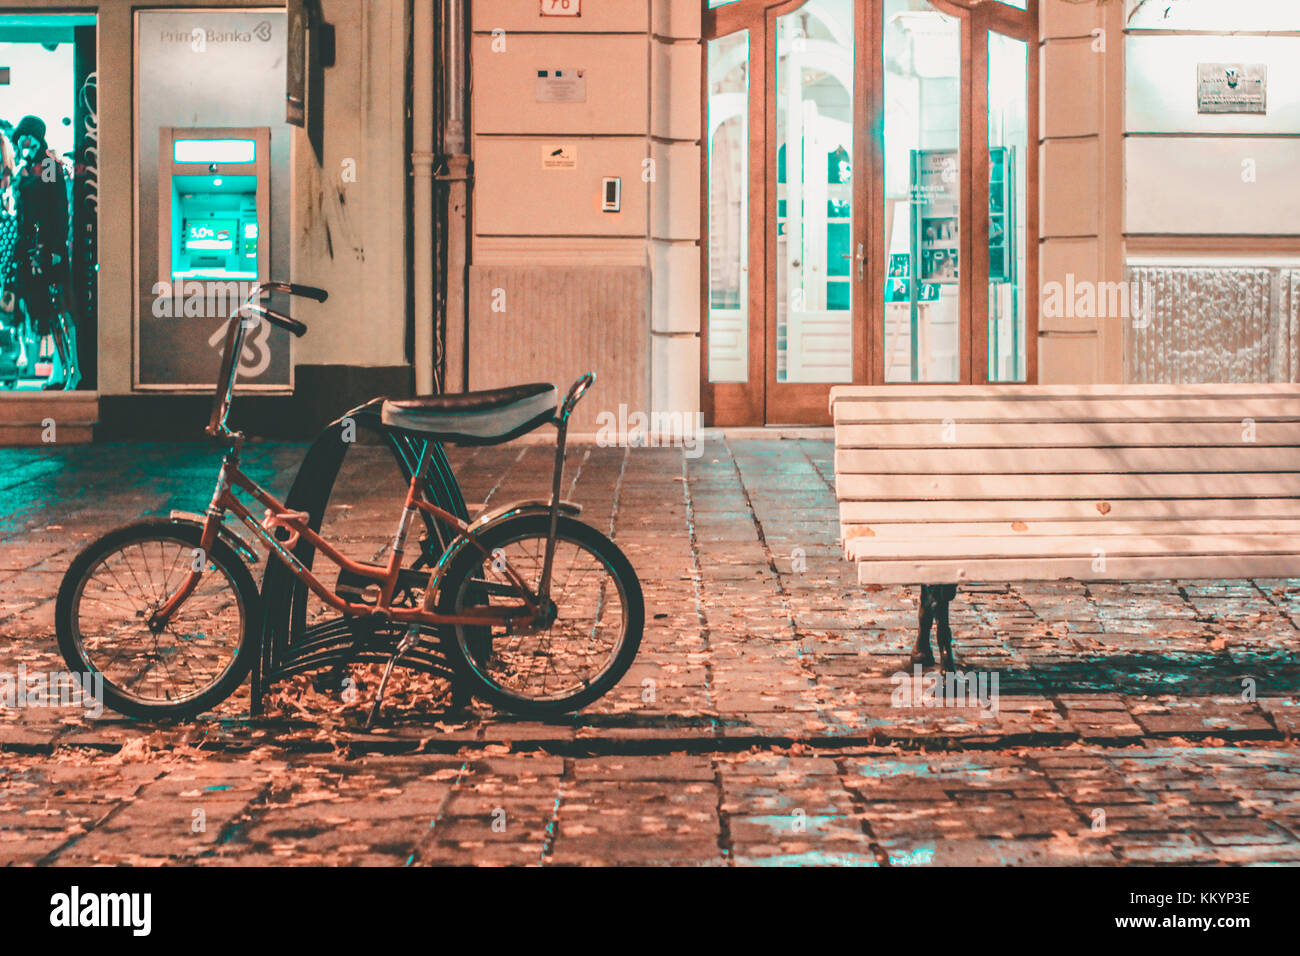 Bicicleta cerca de un pupitre vacío fuera un cajero y tiendas en una carretera asfaltada paisaje nocturno el verde azulado y naranja Foto de stock